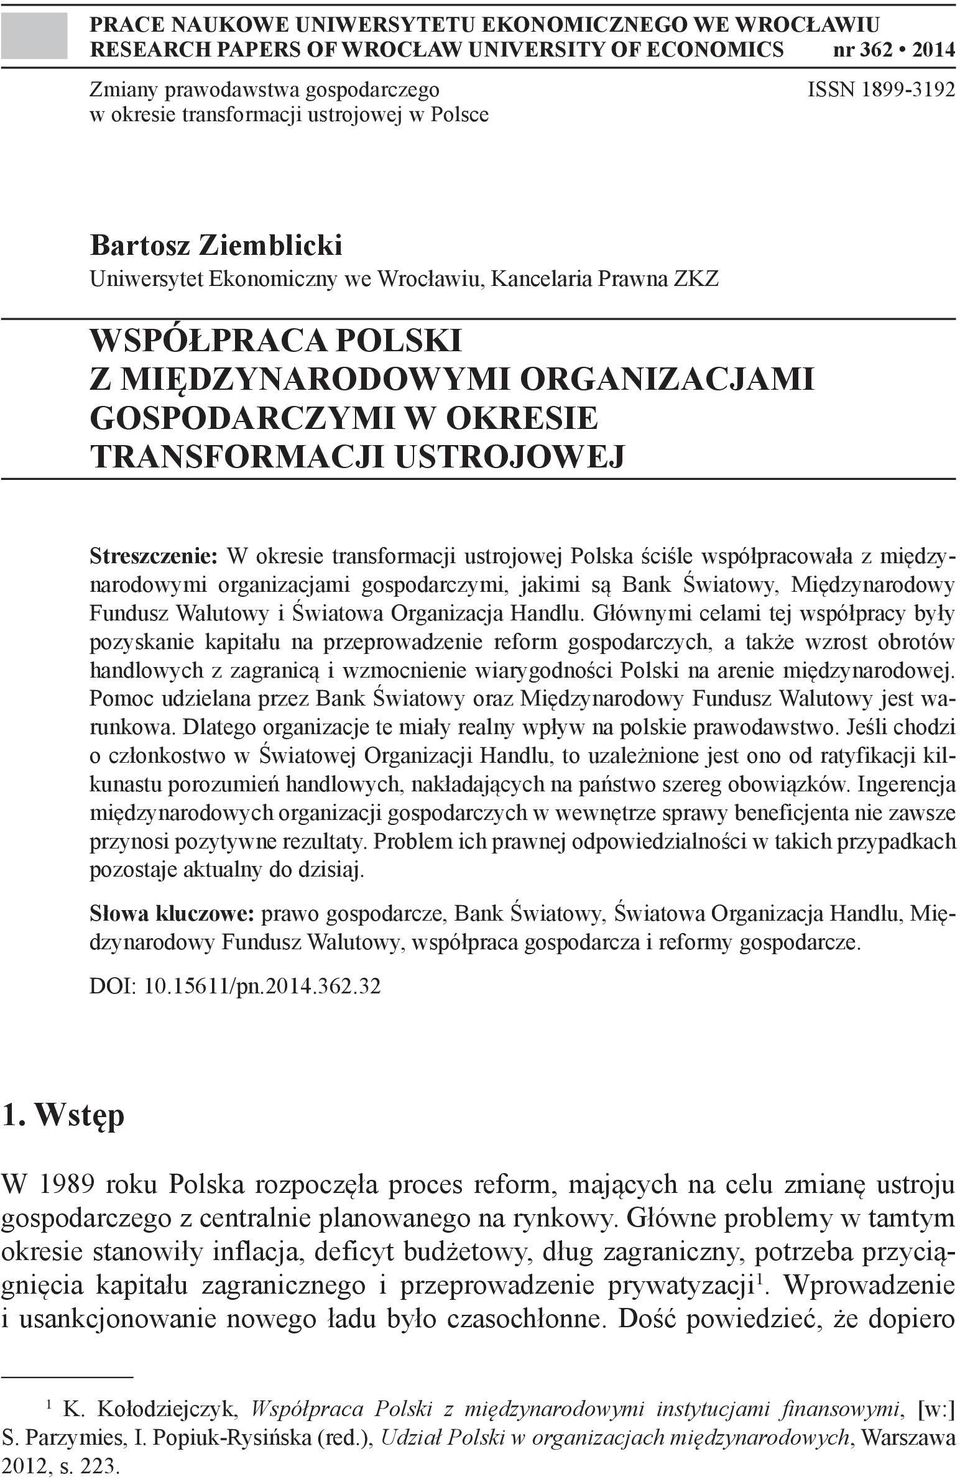 Streszczenie: W okresie transformacji ustrojowej Polska ściśle współpracowała z międzynarodowymi organizacjami gospodarczymi, jakimi są Bank Światowy, Międzynarodowy Fundusz Walutowy i Światowa